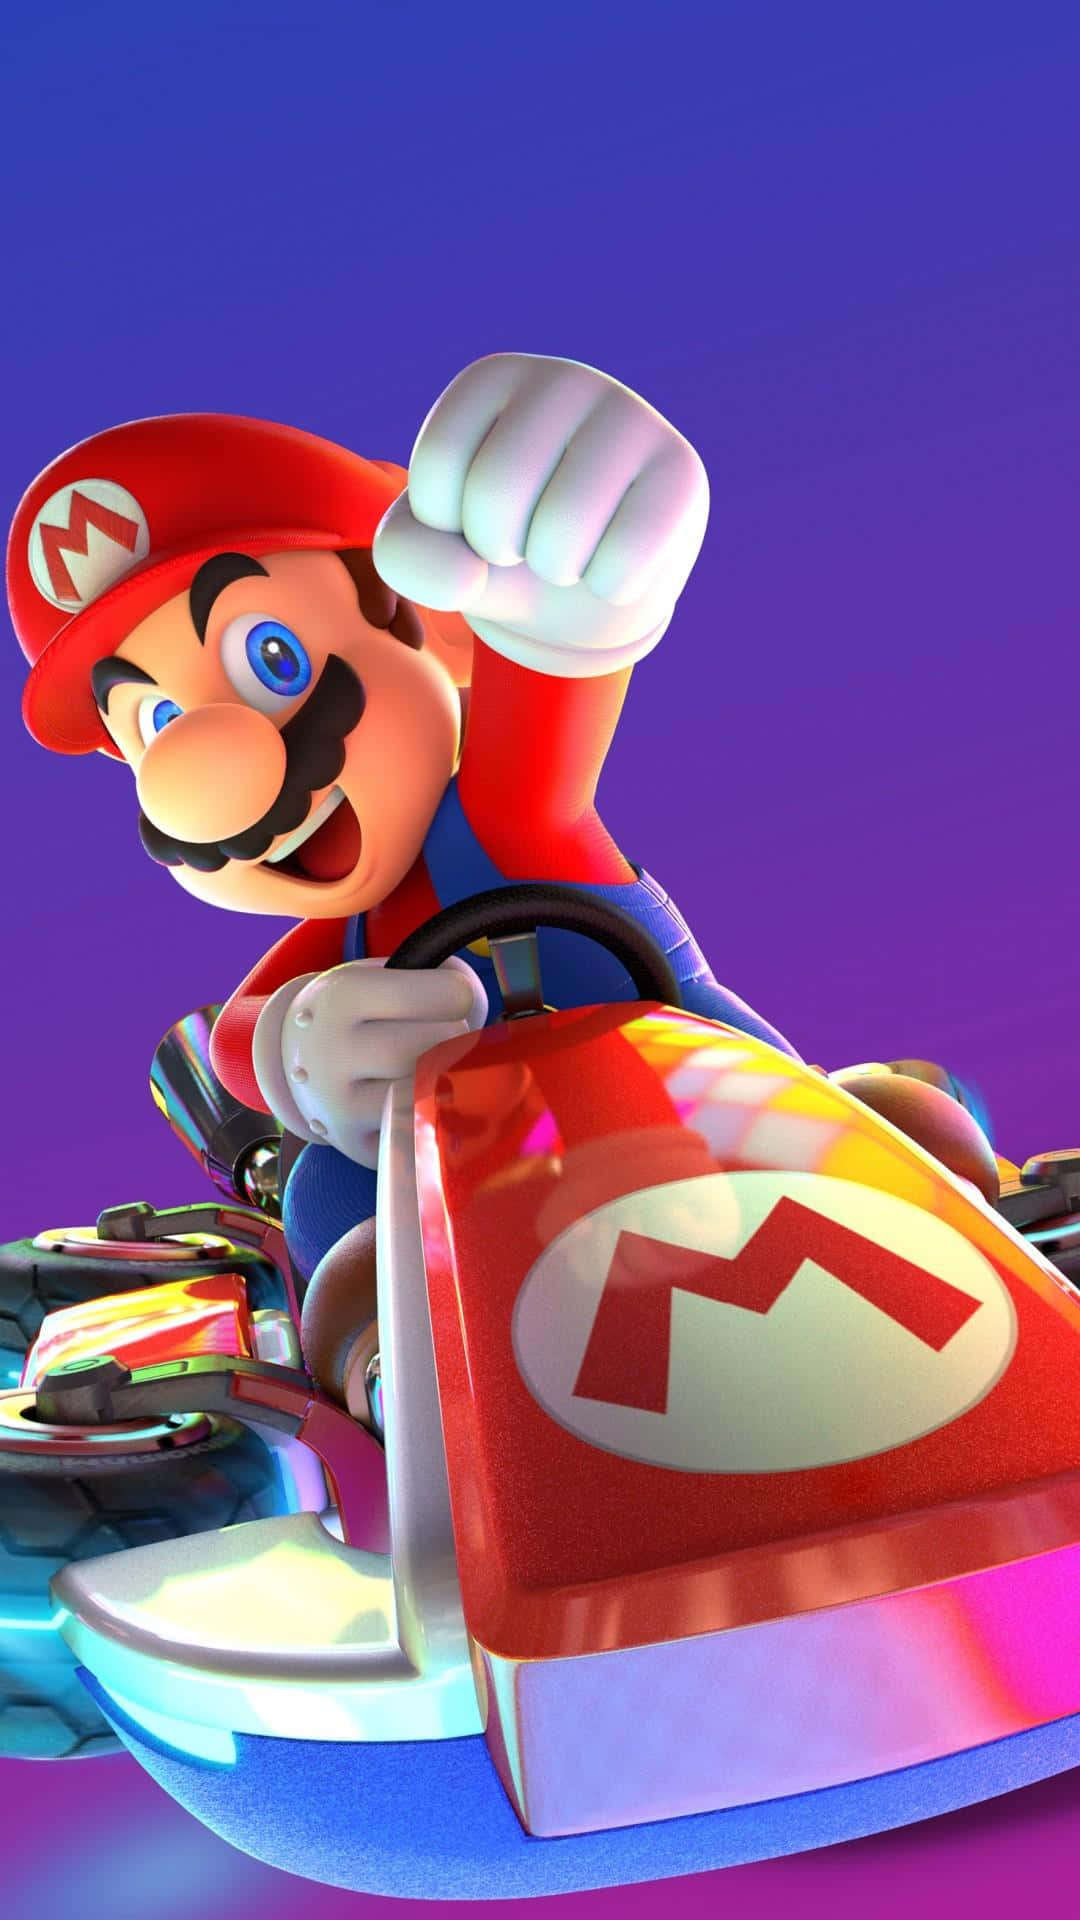 Det ikoniske Mario fra Super Mario Bros. berømmelse er inkluderet. Wallpaper